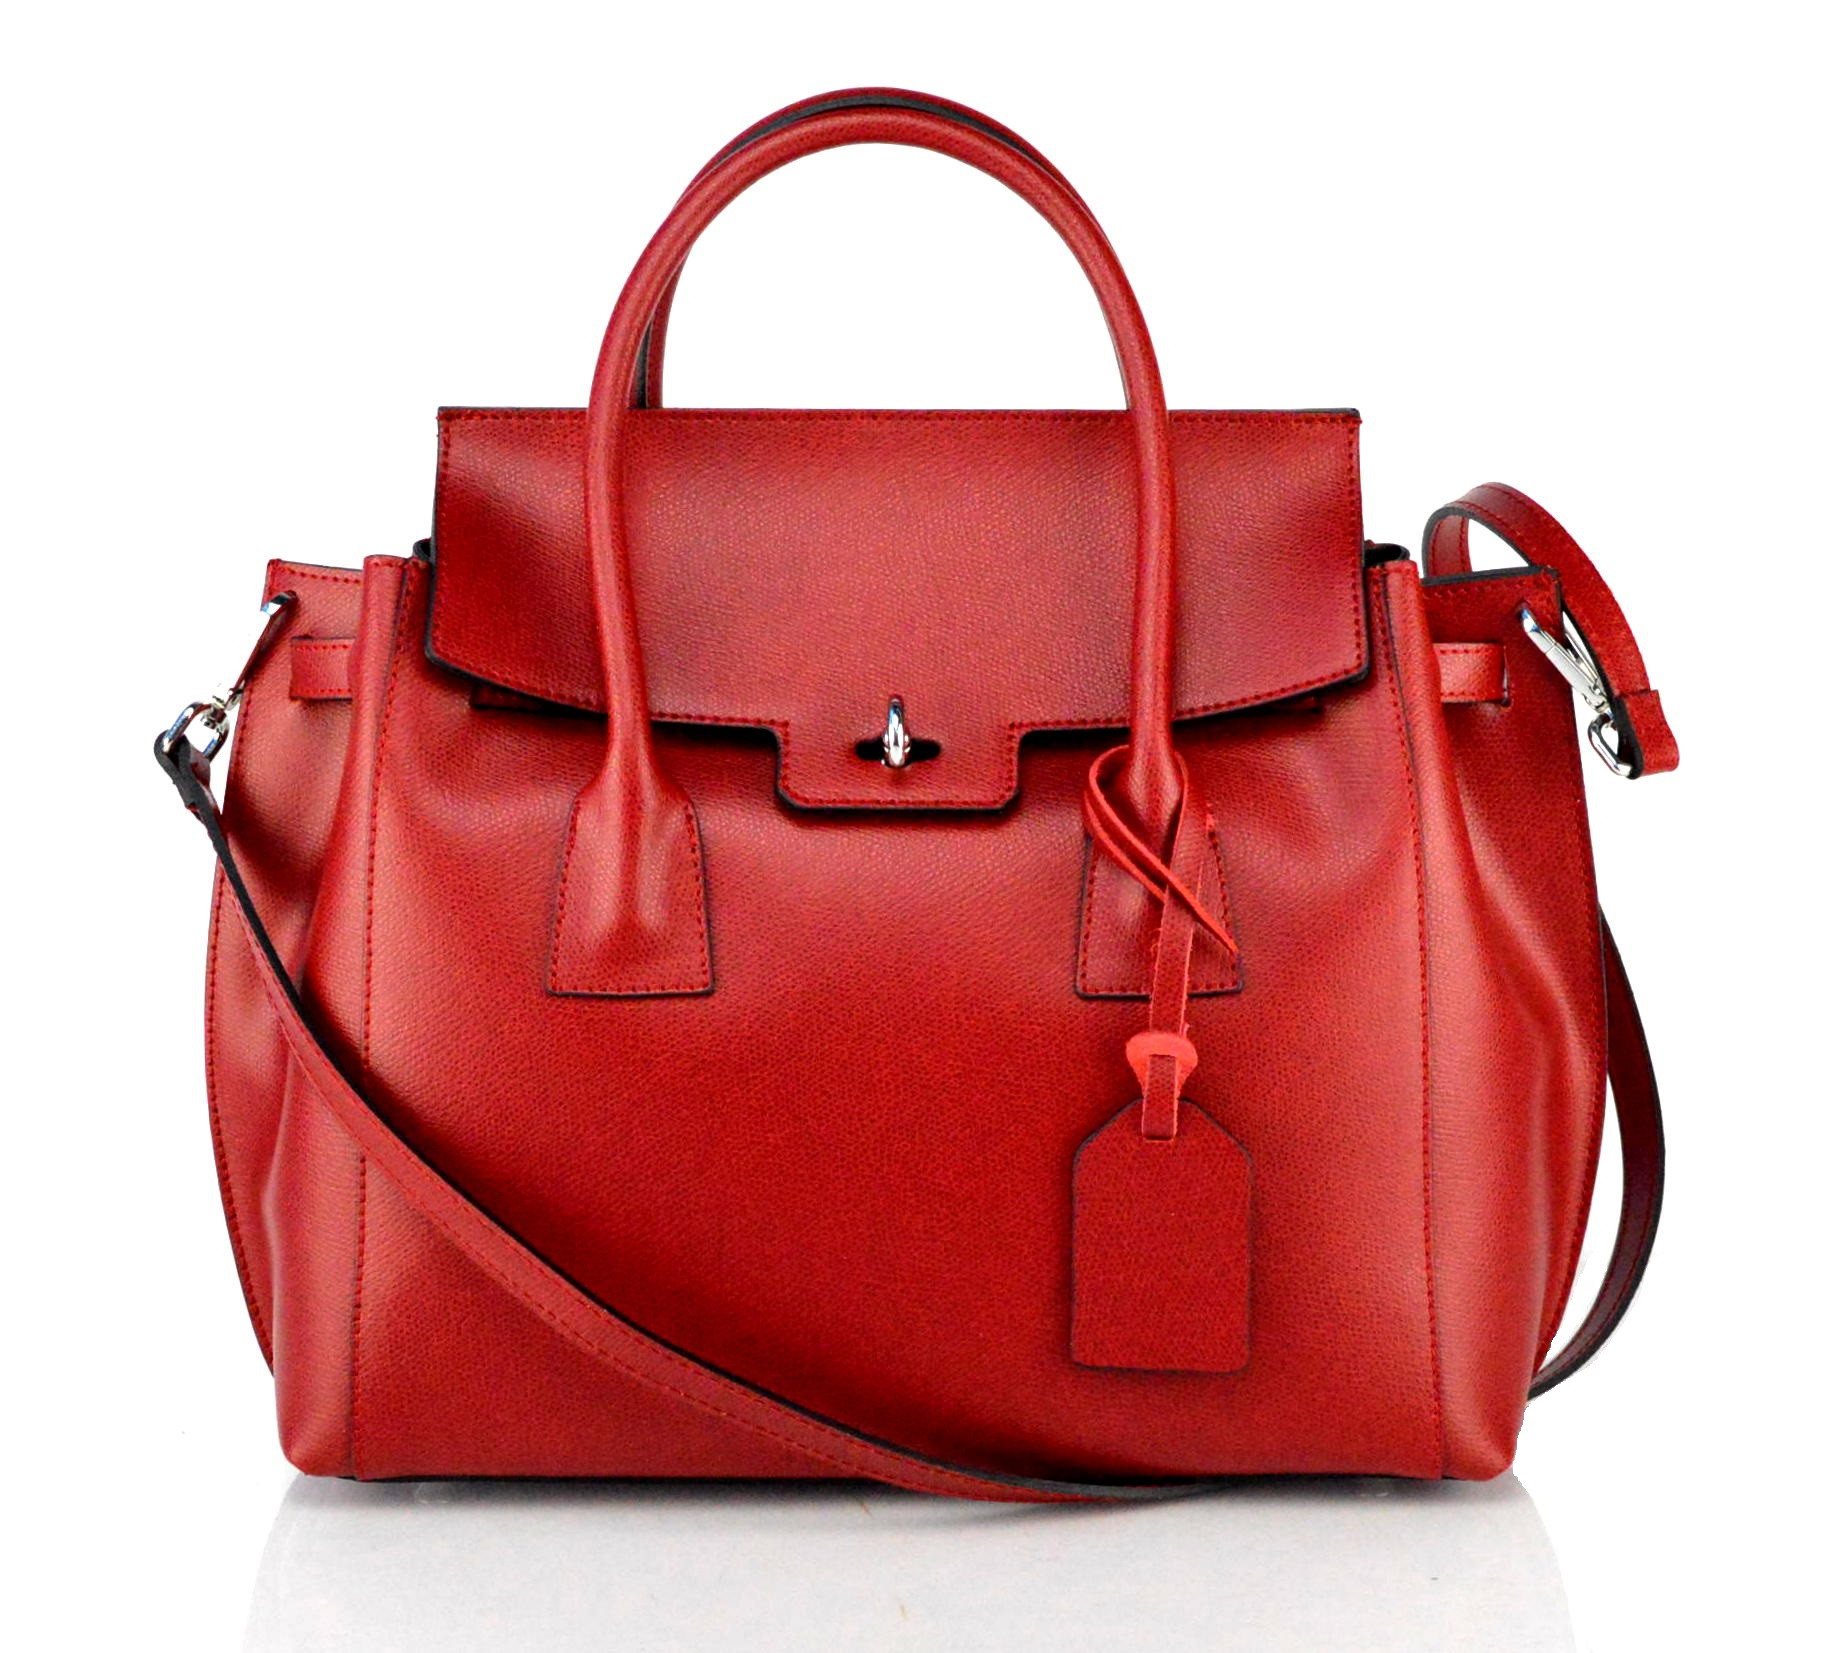 Luxusní jedinečná tmavě červená kožená kabelka do ruky Liana